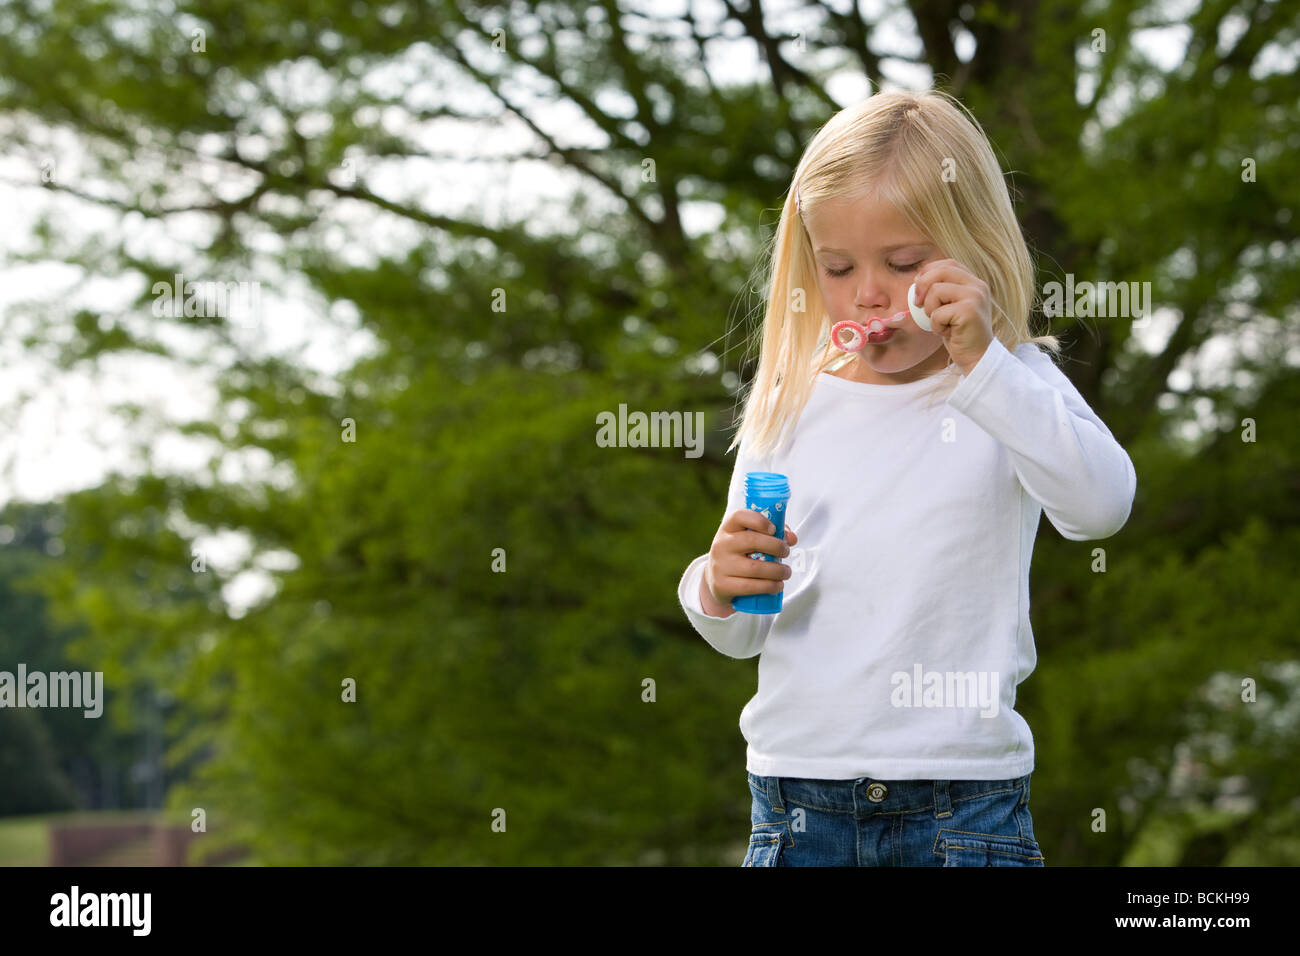 Niedliche kleine vier jährige Mädchen bläst Seifenblasen im park Stockfoto